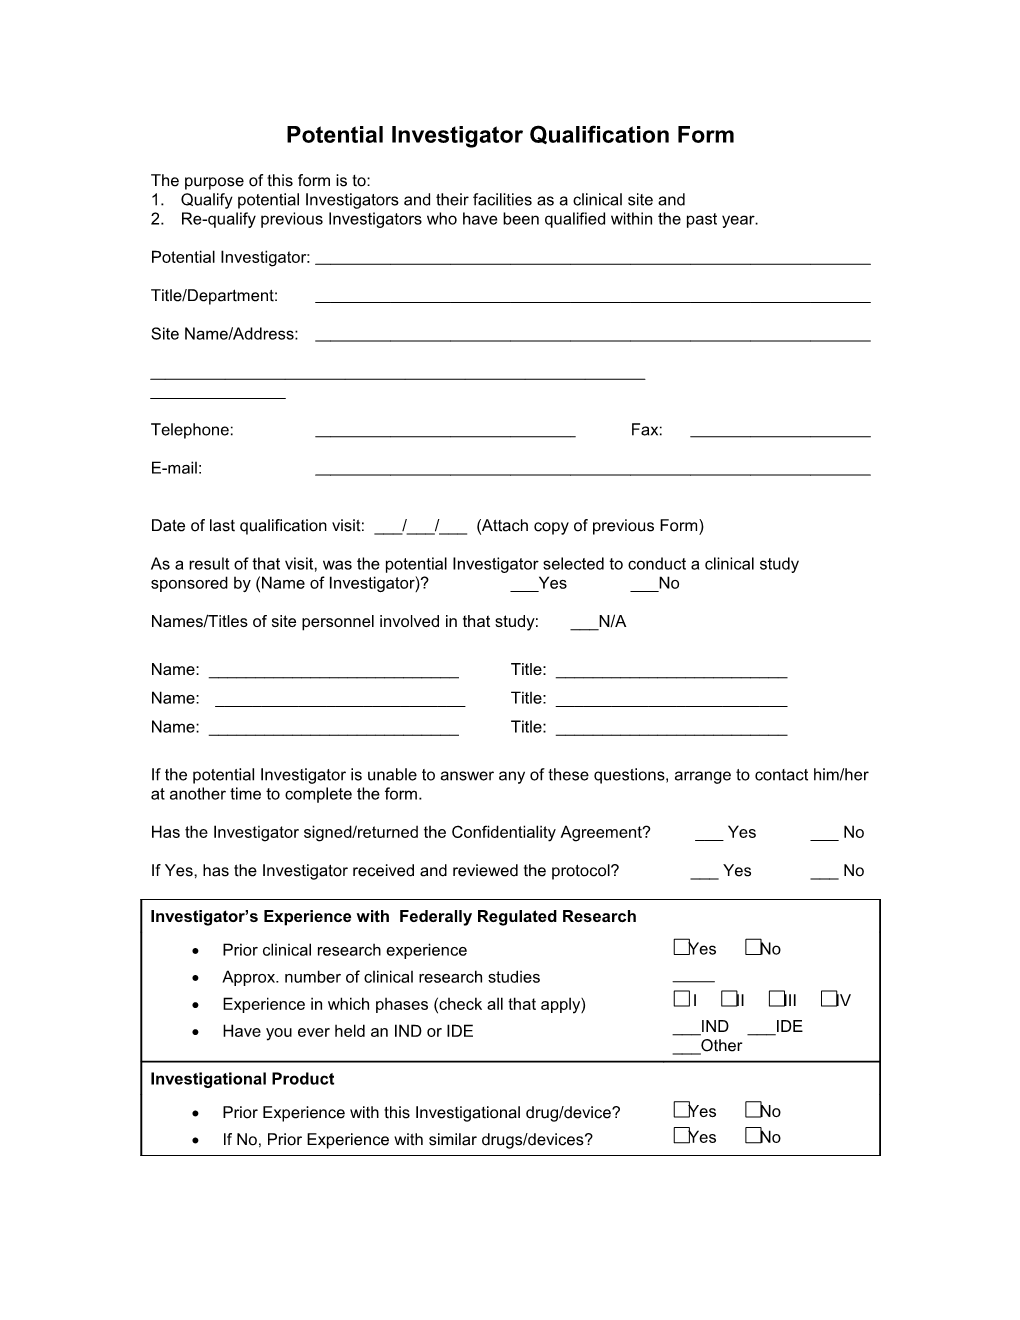 Potential Investigator Qualification Form